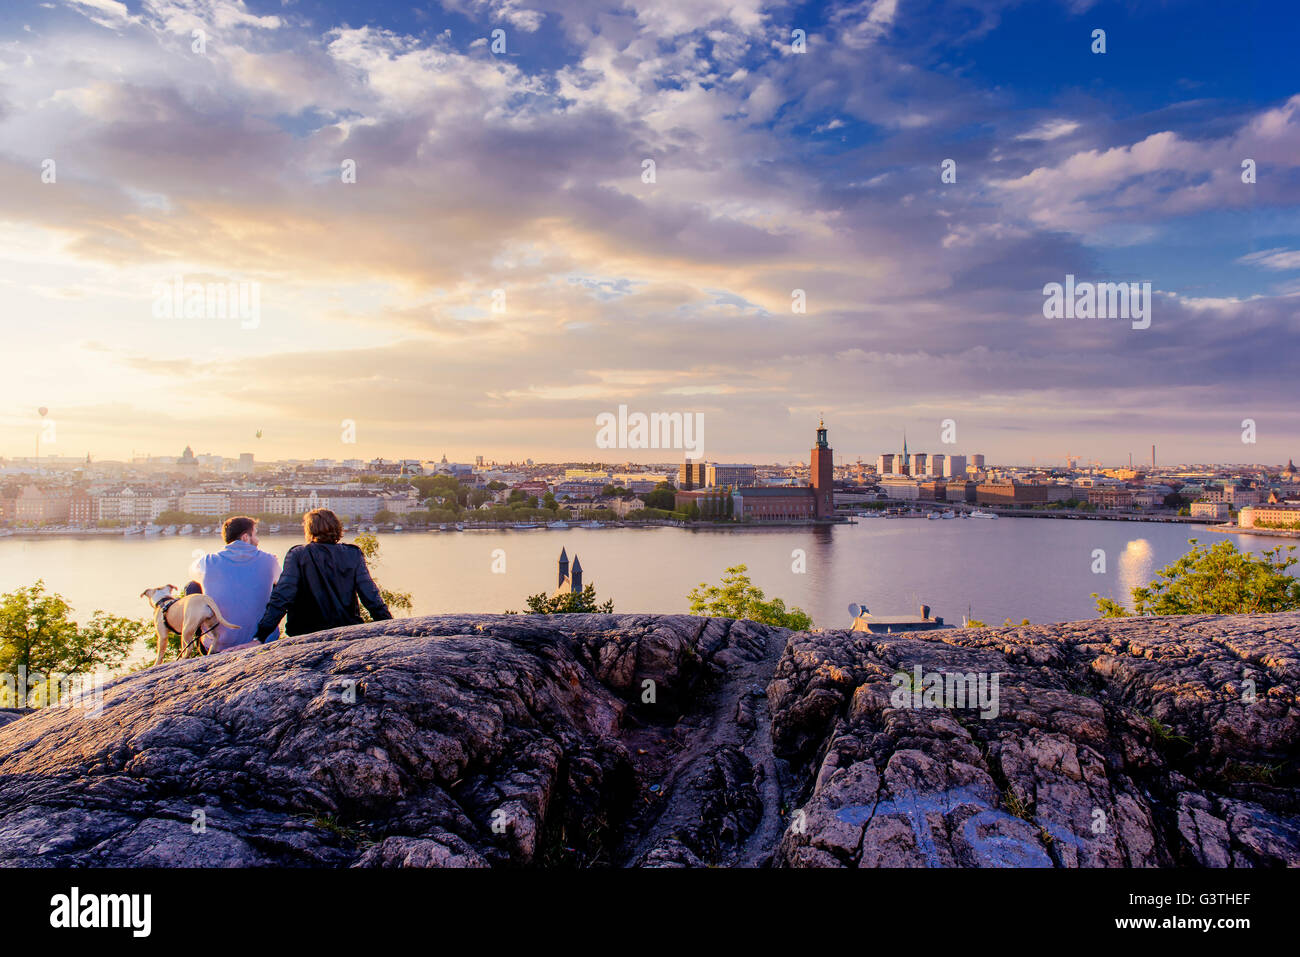 Sweden, Stockholm, Sodermalm, Skinnarviksparken, Skinnarviksberget, People spending evening in park Stock Photo